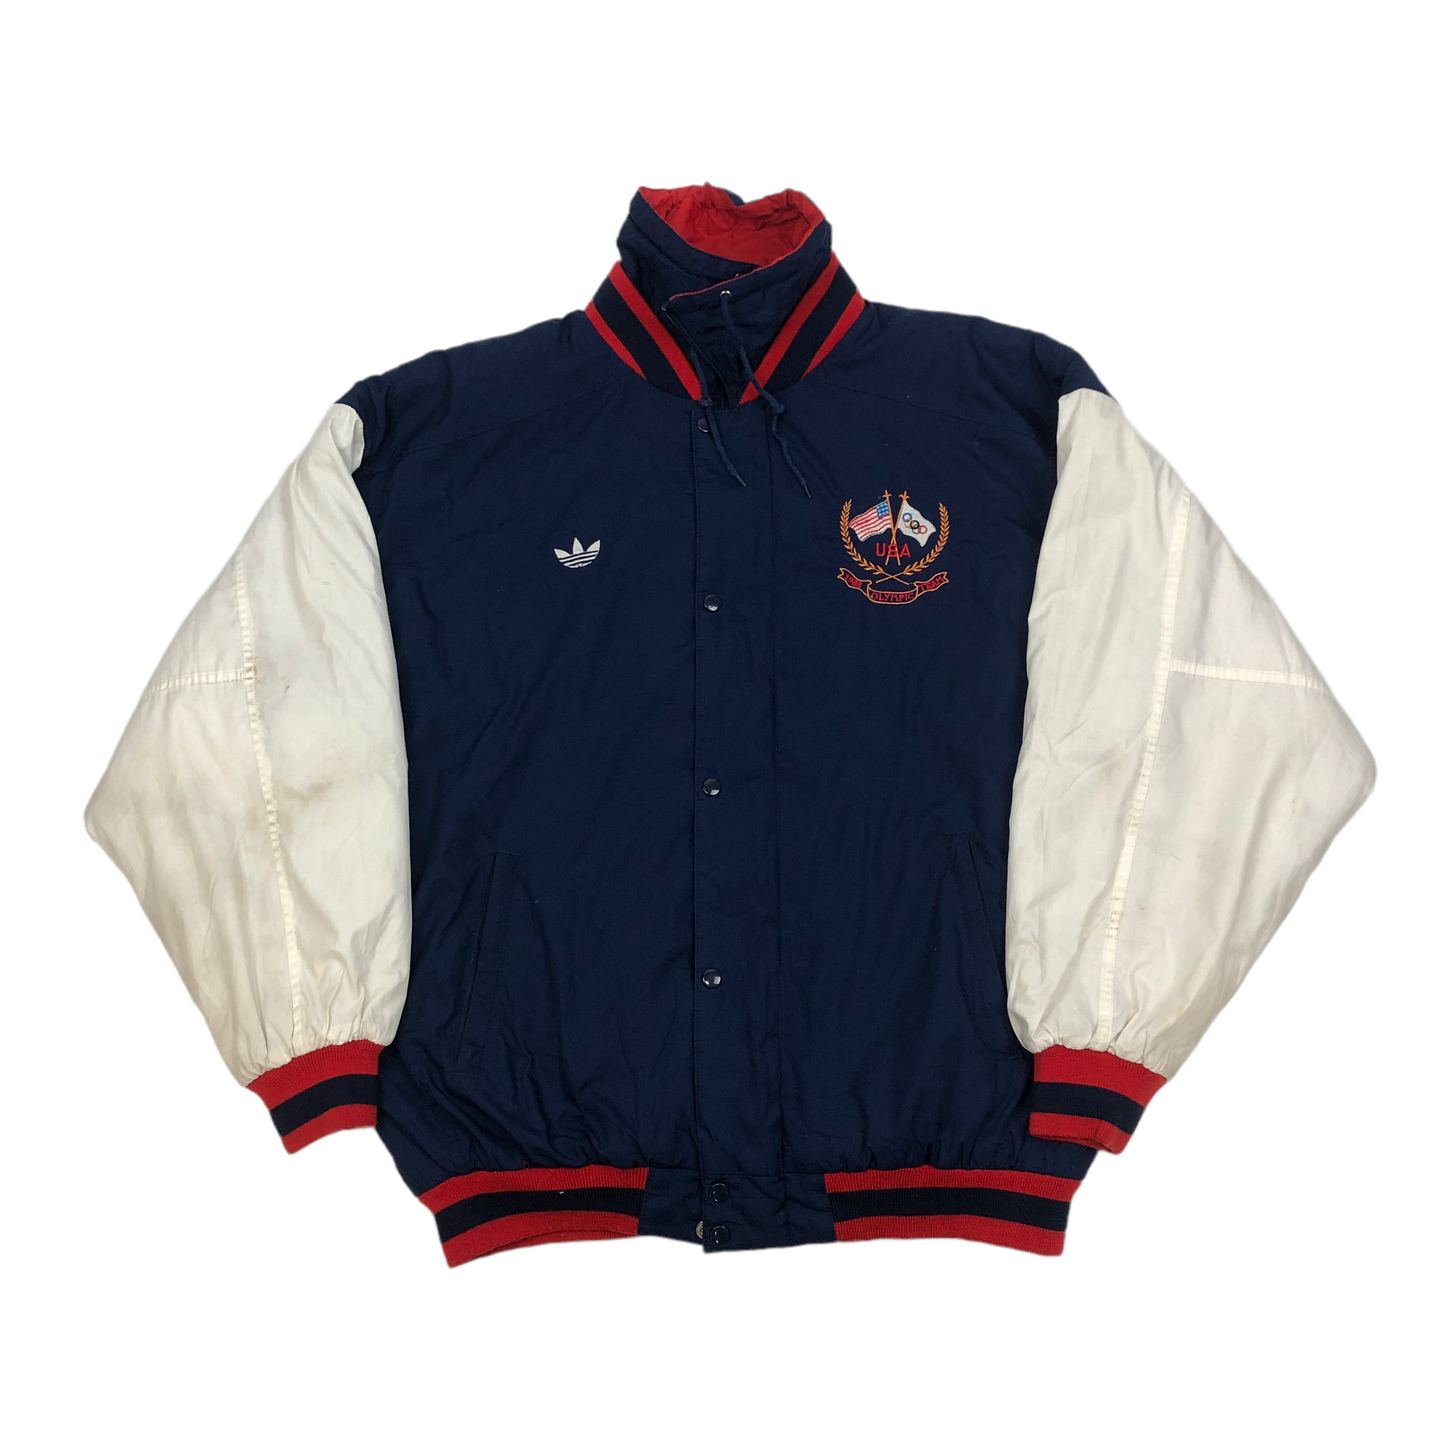 Vintage Adidas 1988 Olympic Team Varsity Jacket (X-Large)